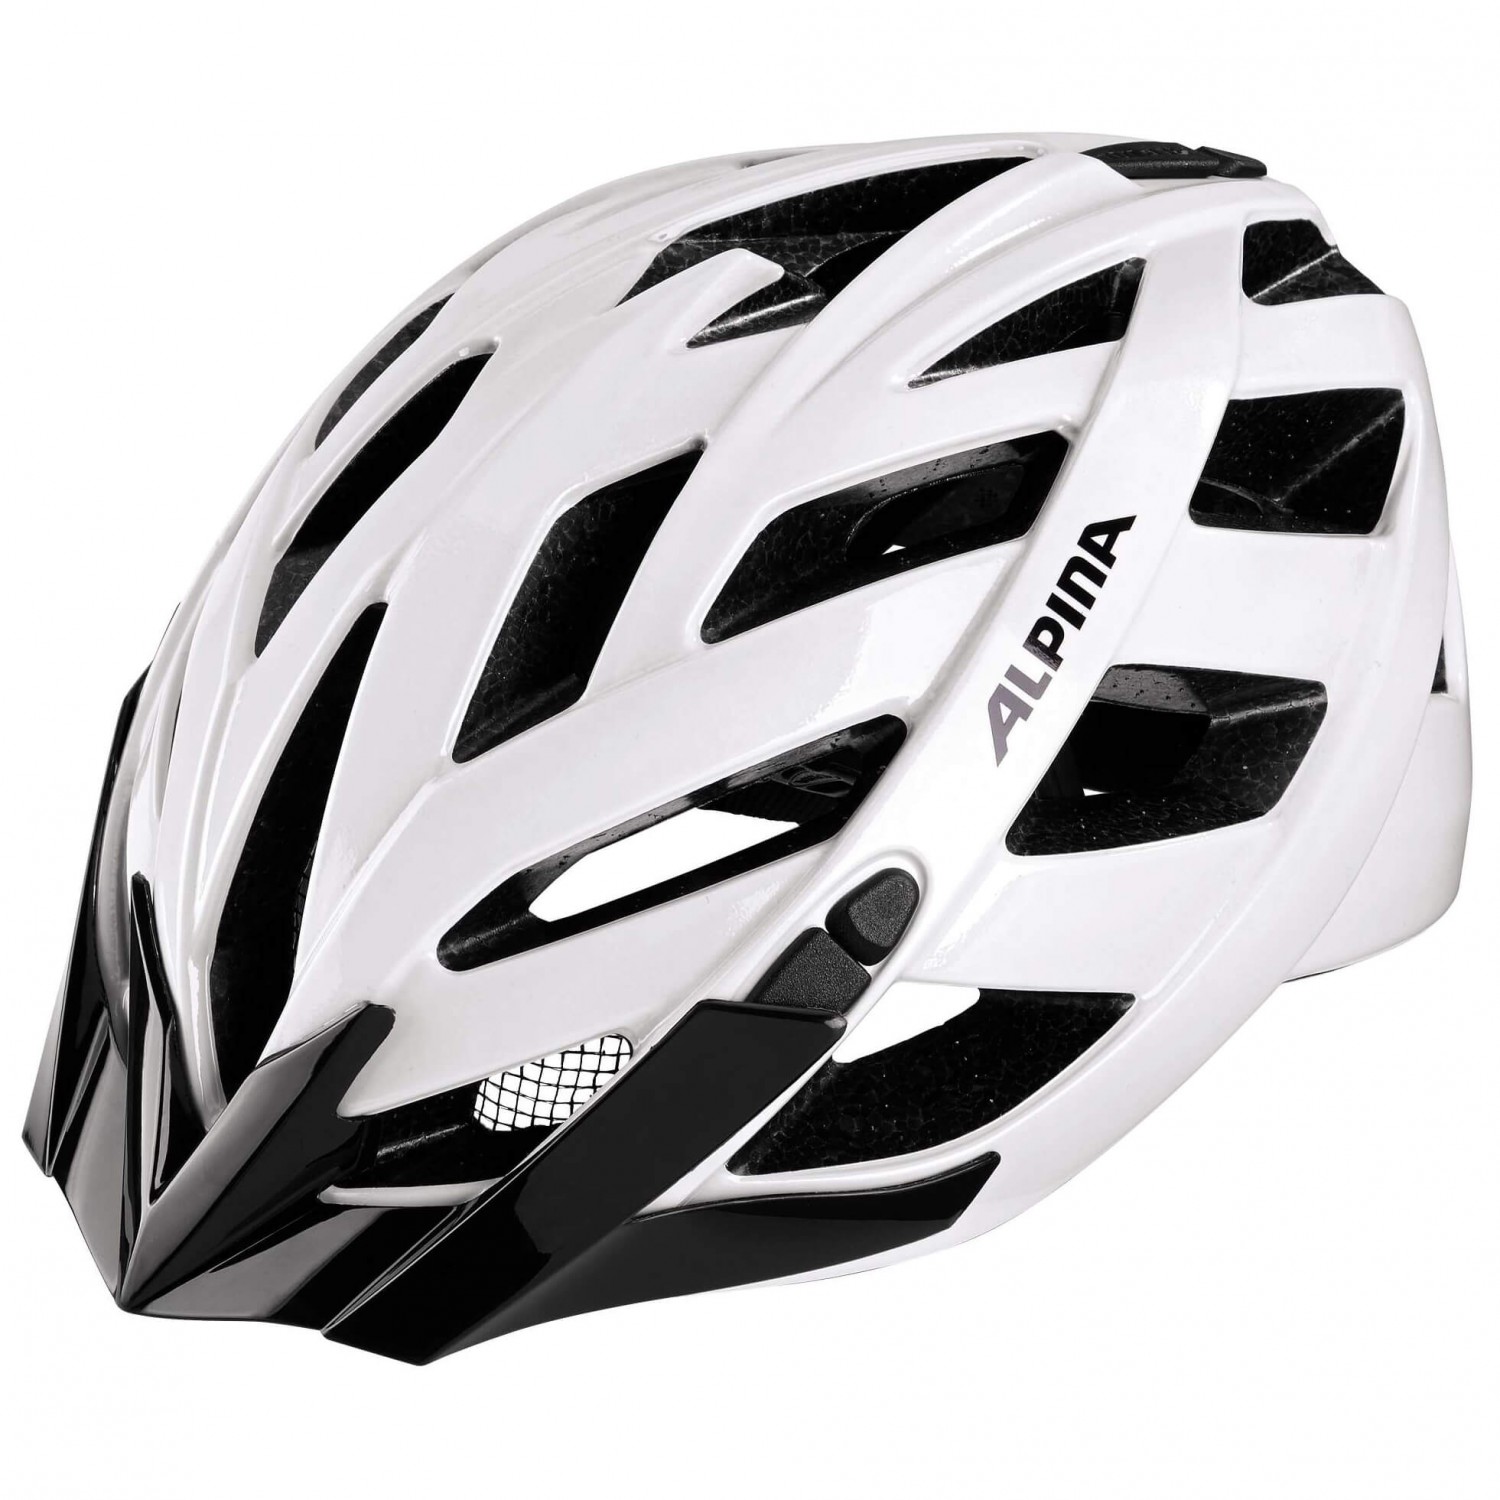 Велосипедный шлем Alpina Panoma Classic, белый шлем велосипедный stern зеленый размер 52 56